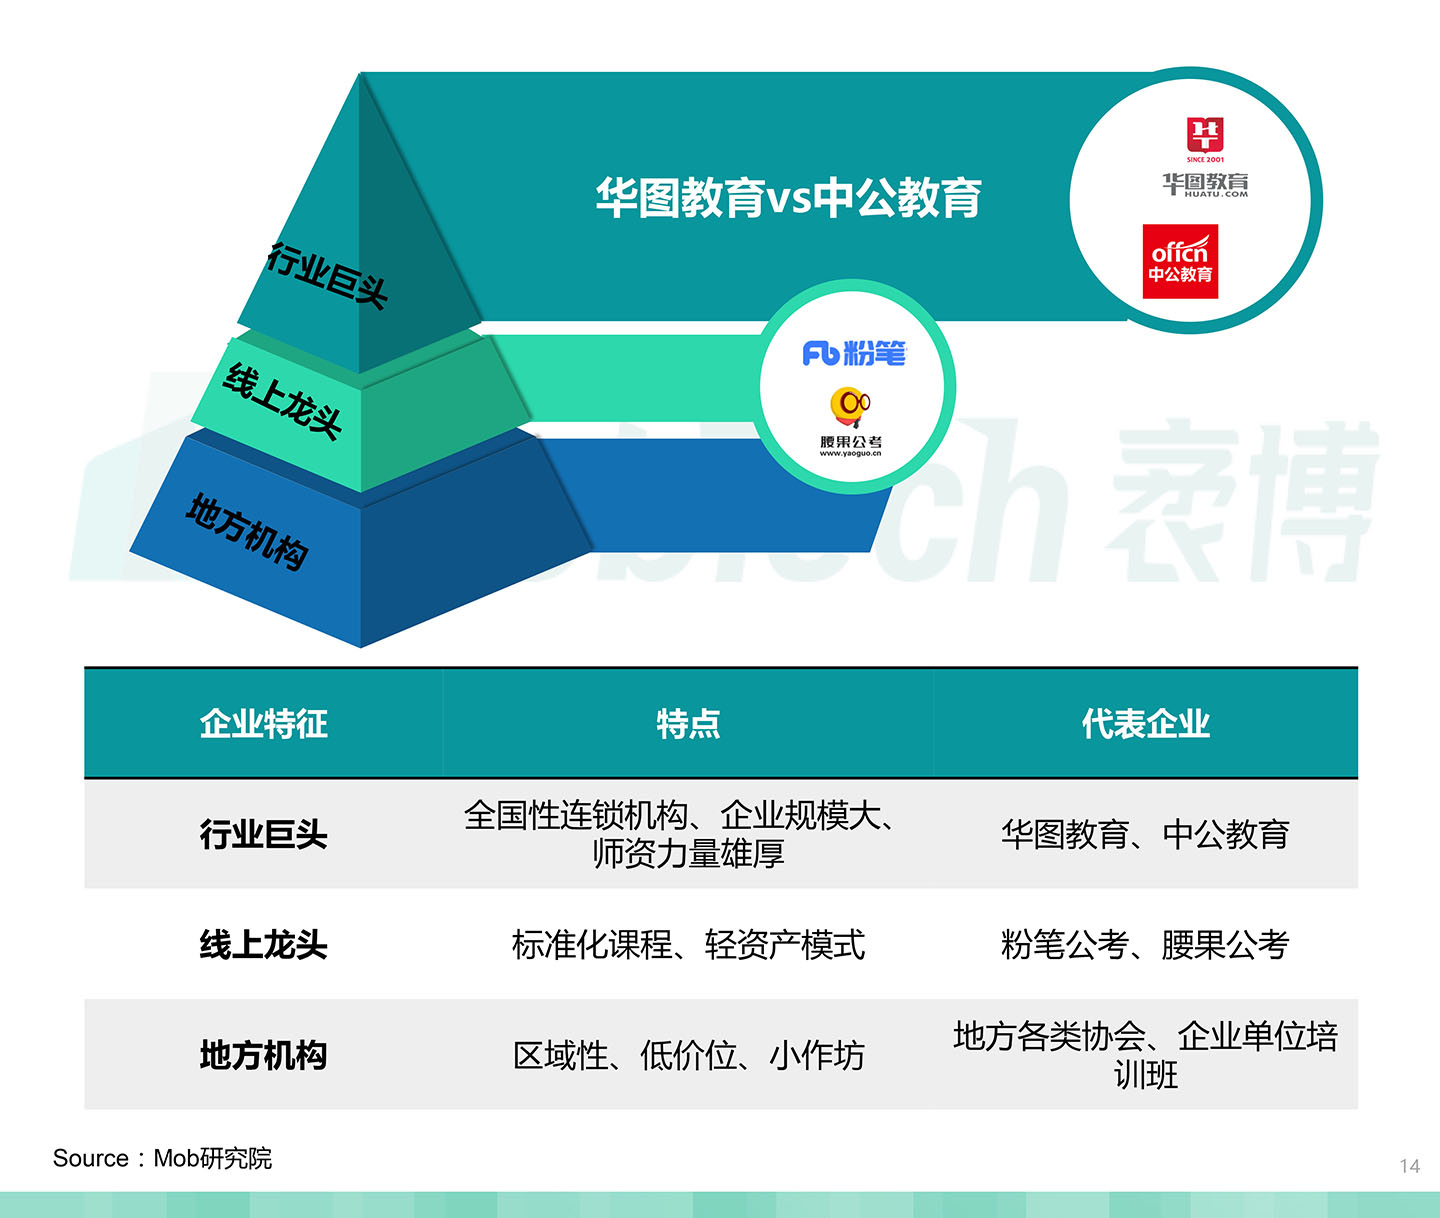 2020中国职业教育行业白皮书